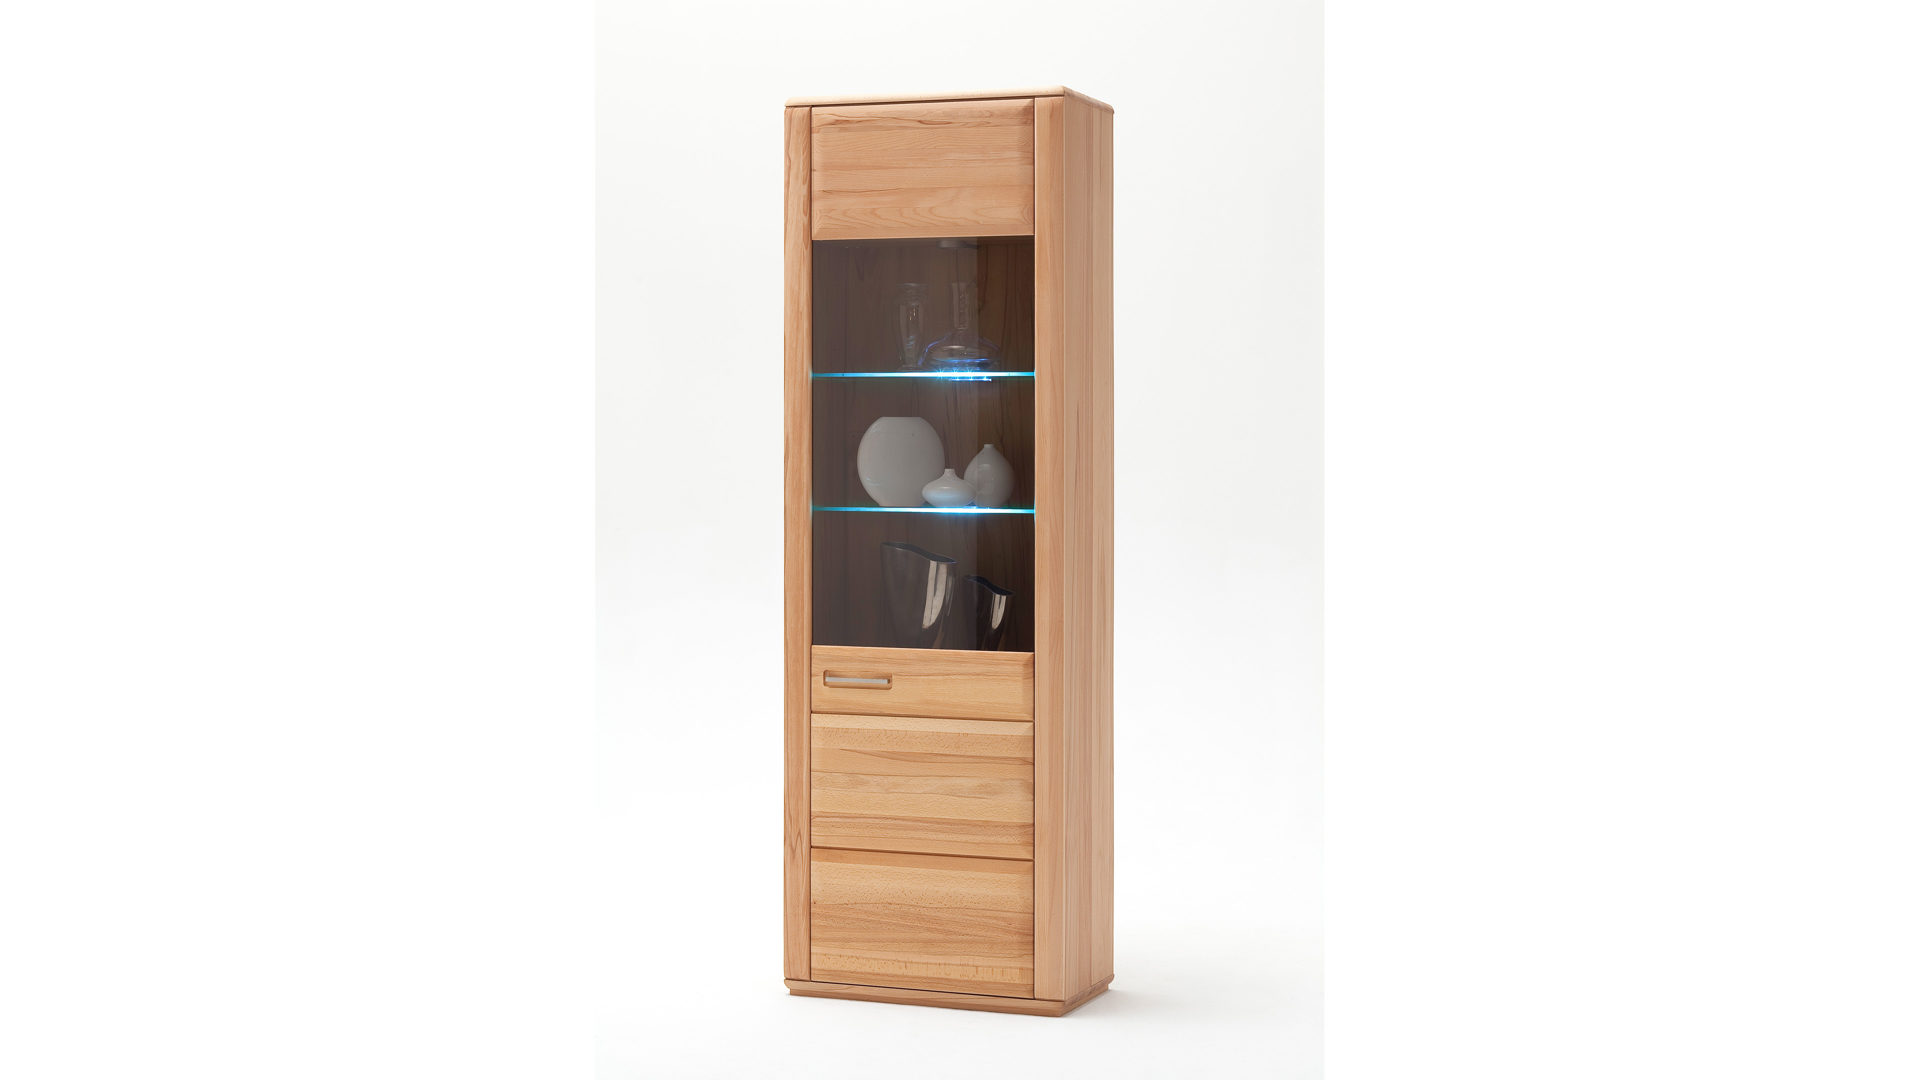 Vitrine Mca furniture aus Holz in Holzfarben Vitrinenschrank als Wohnzimmermöbel geölte Kernbuche – eine Tür